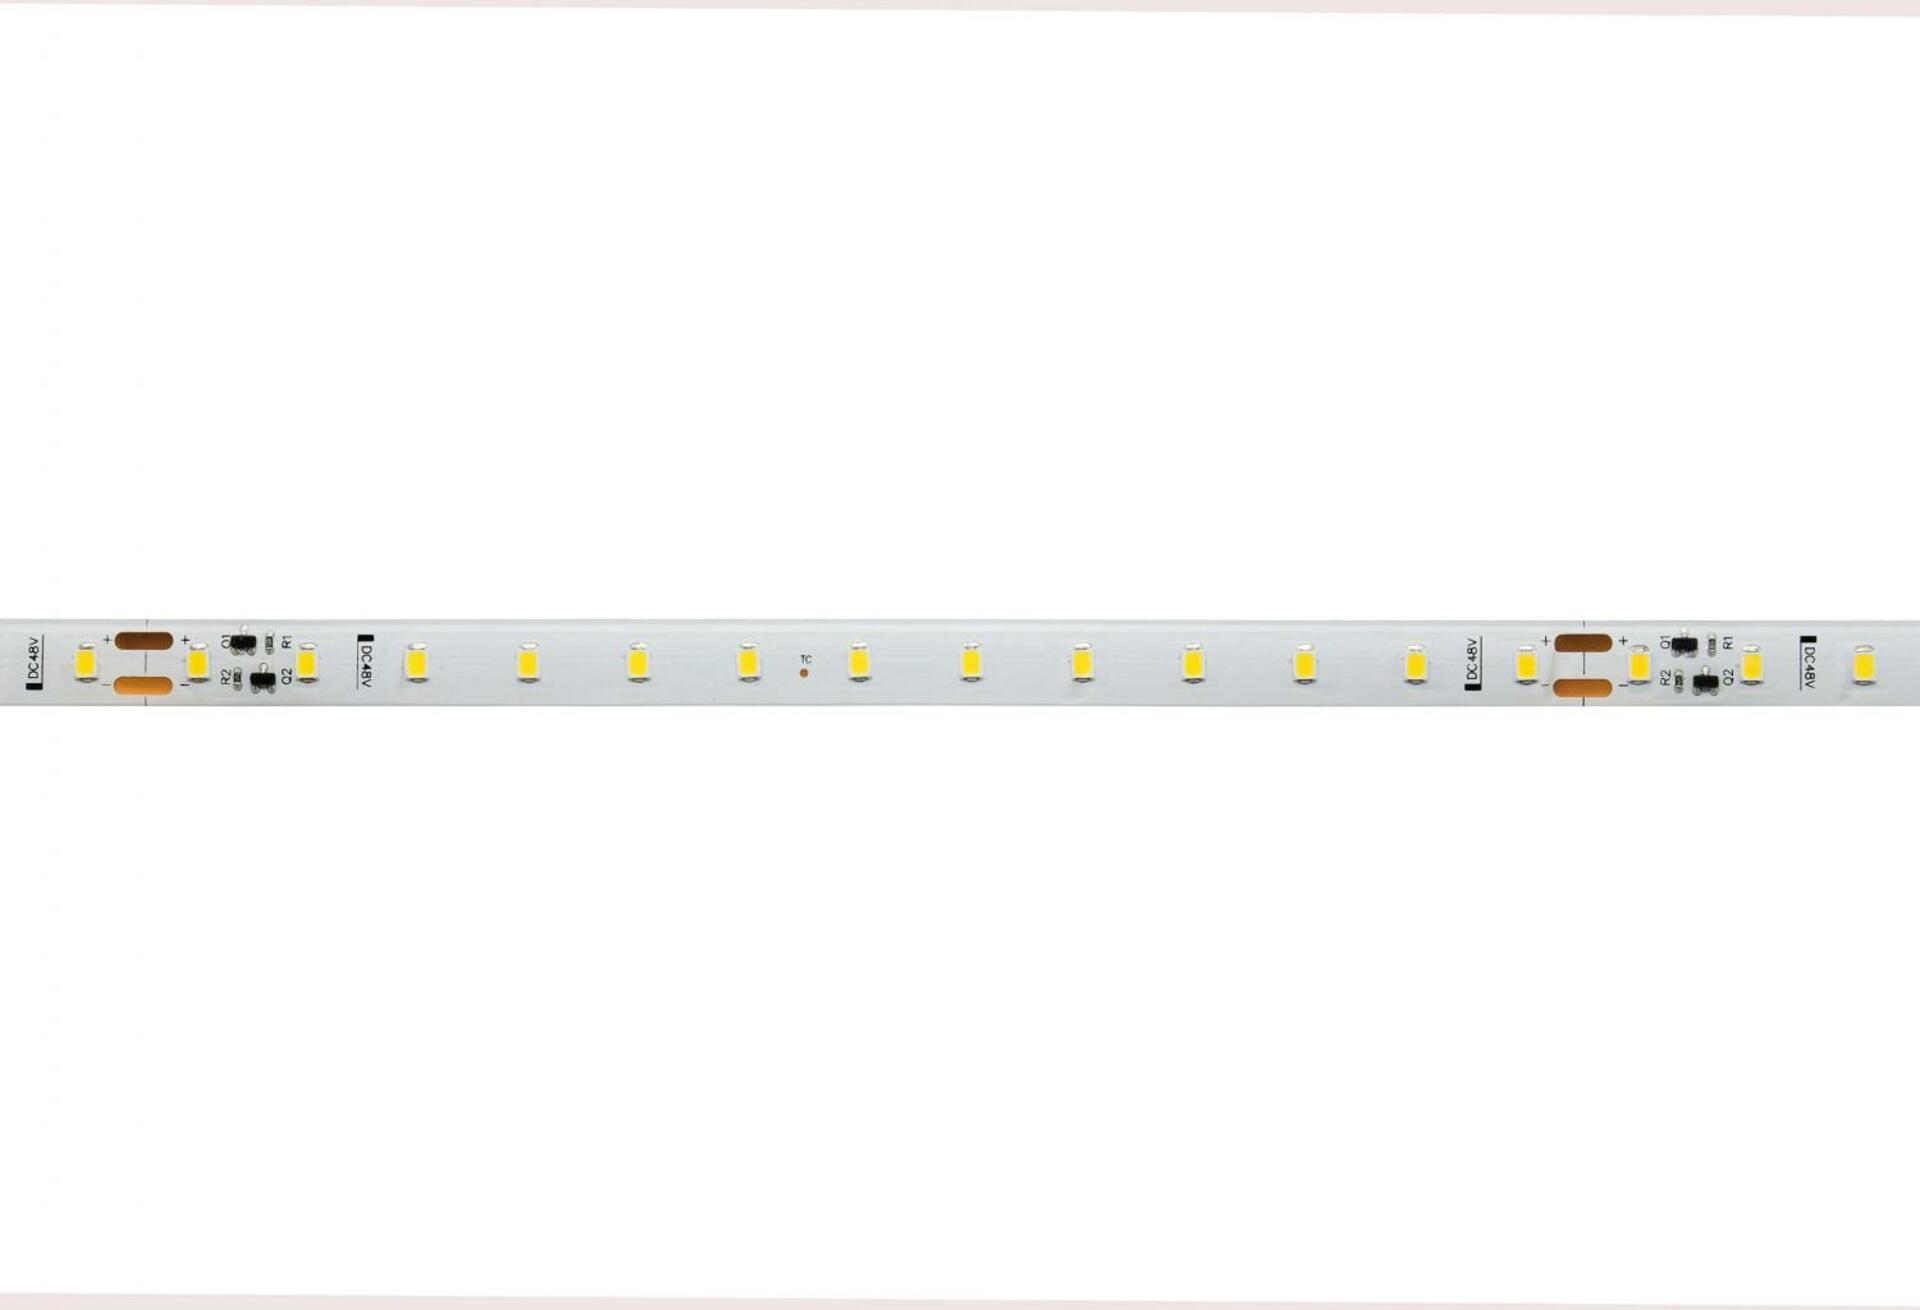 Light Impressions Deko-Light flexibilní LED pásek 2835-78-48V-3000K-15m-Silikon 48V DC 21,00 W 3000 K 1700 lm 15000 840317